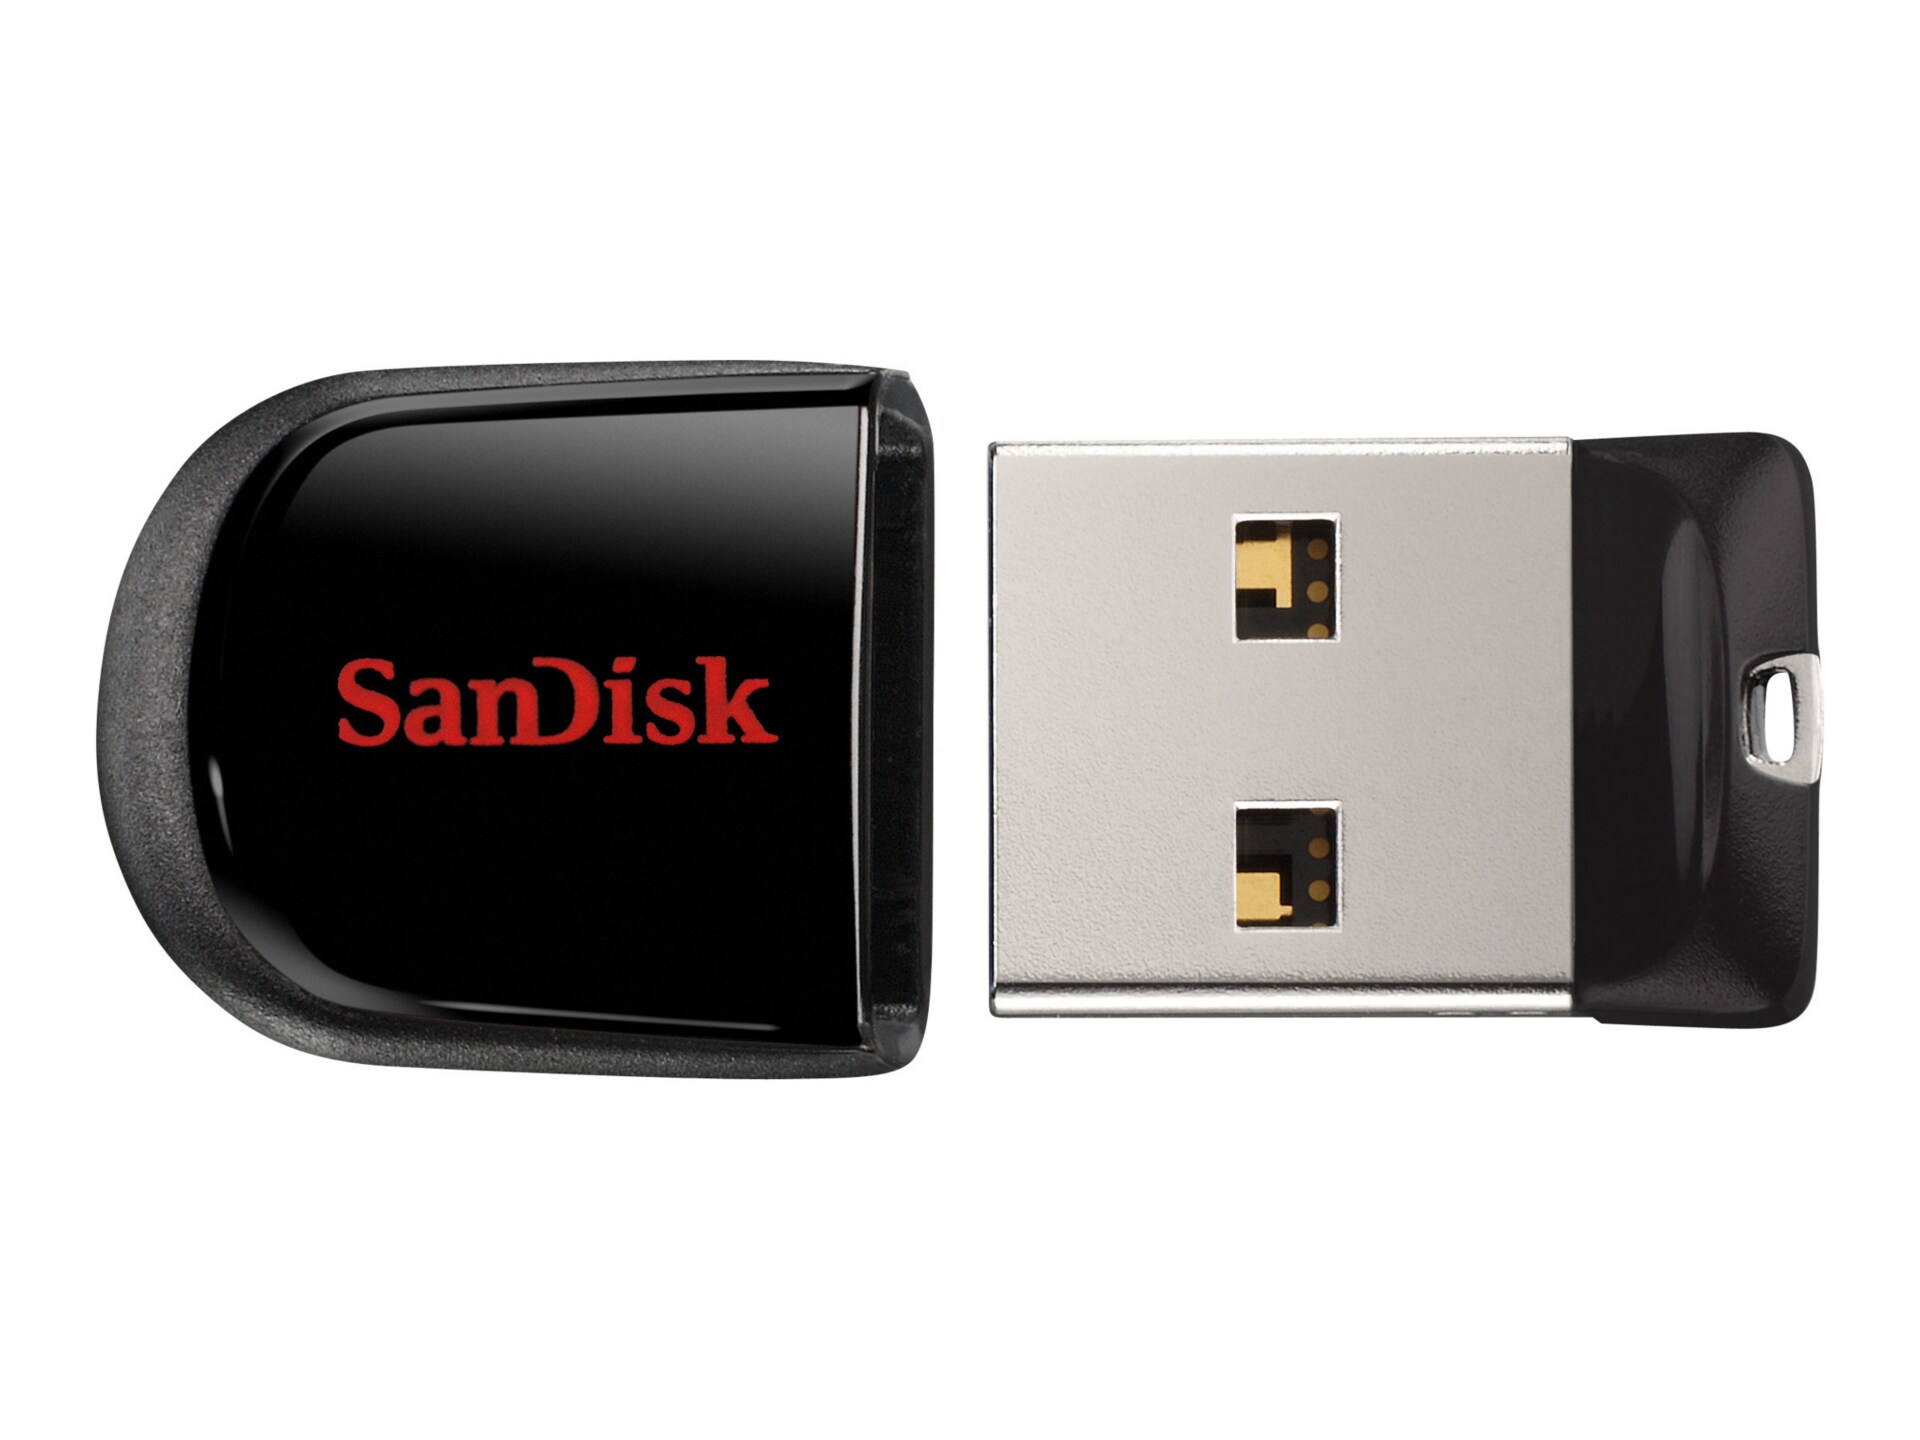 SanDisk Cruzer Fit 16 GB USB 2.0